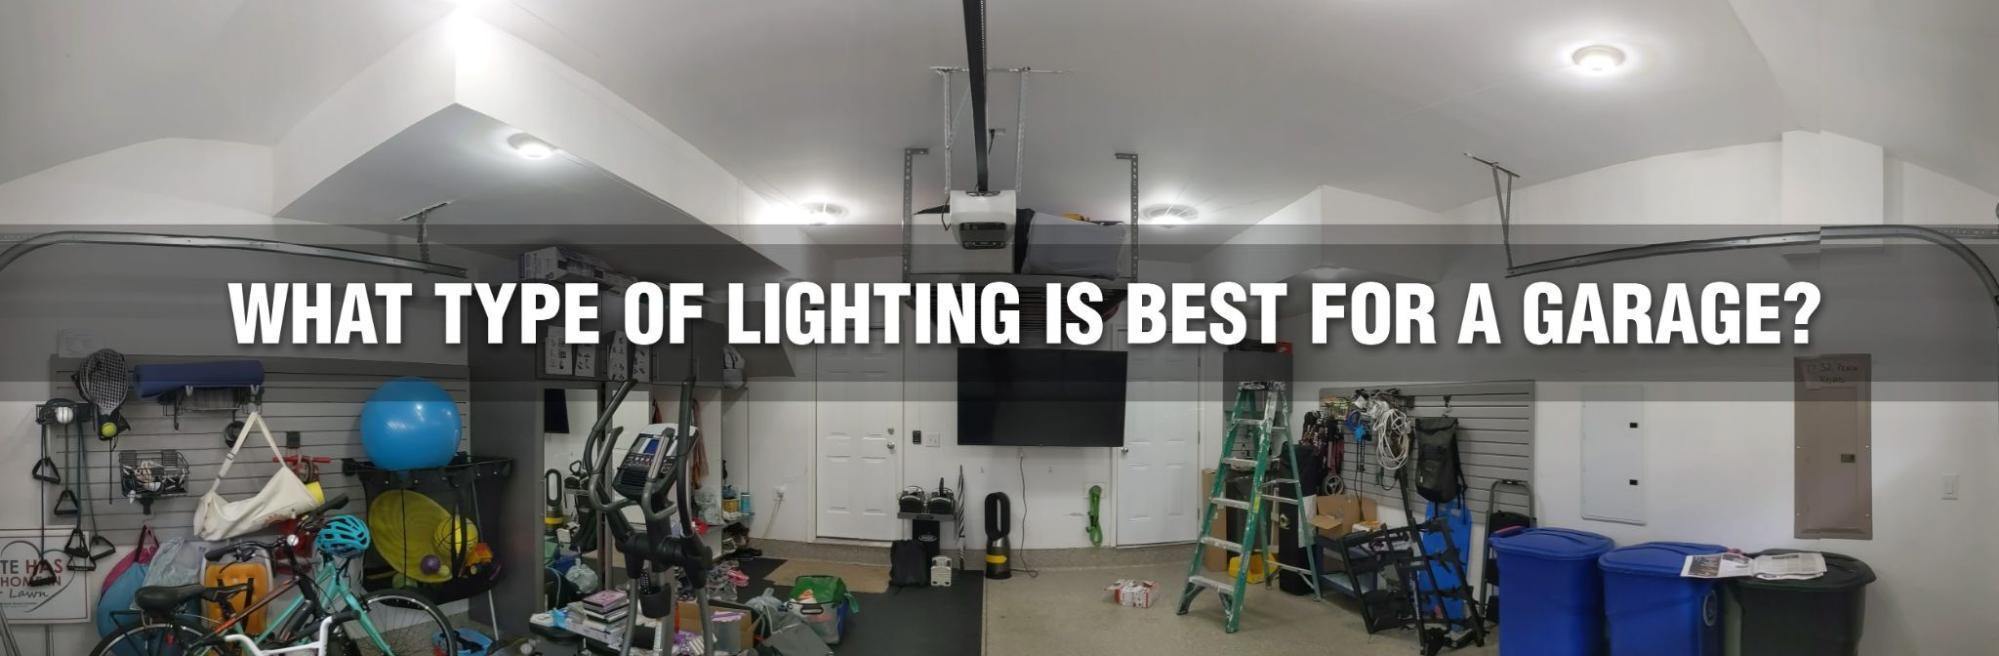 Comment installer des lumières LED dans mon garage? - STKR